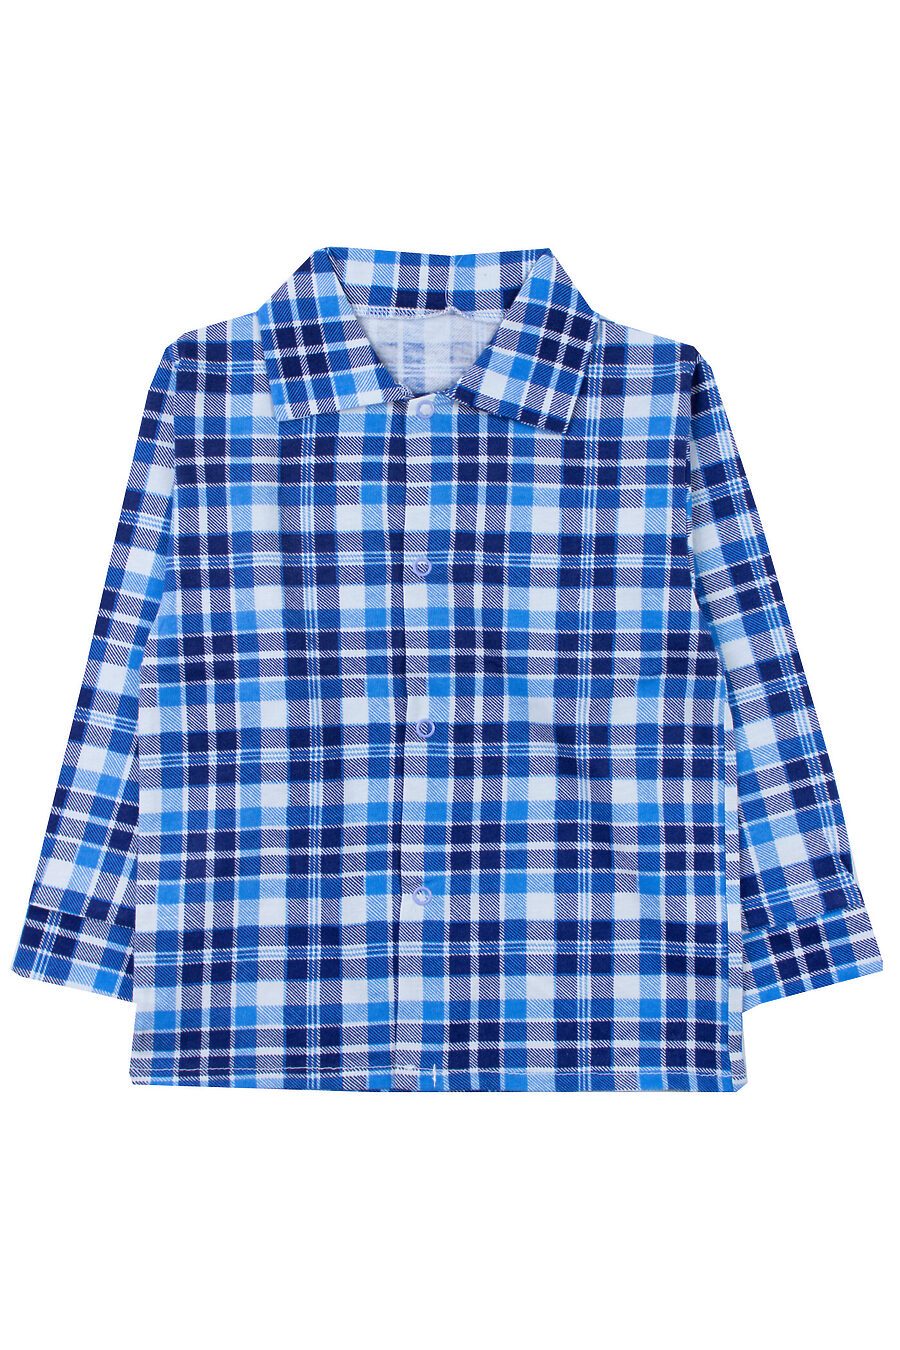 Рубашка YOULALA (742505), купить в Moyo.moda